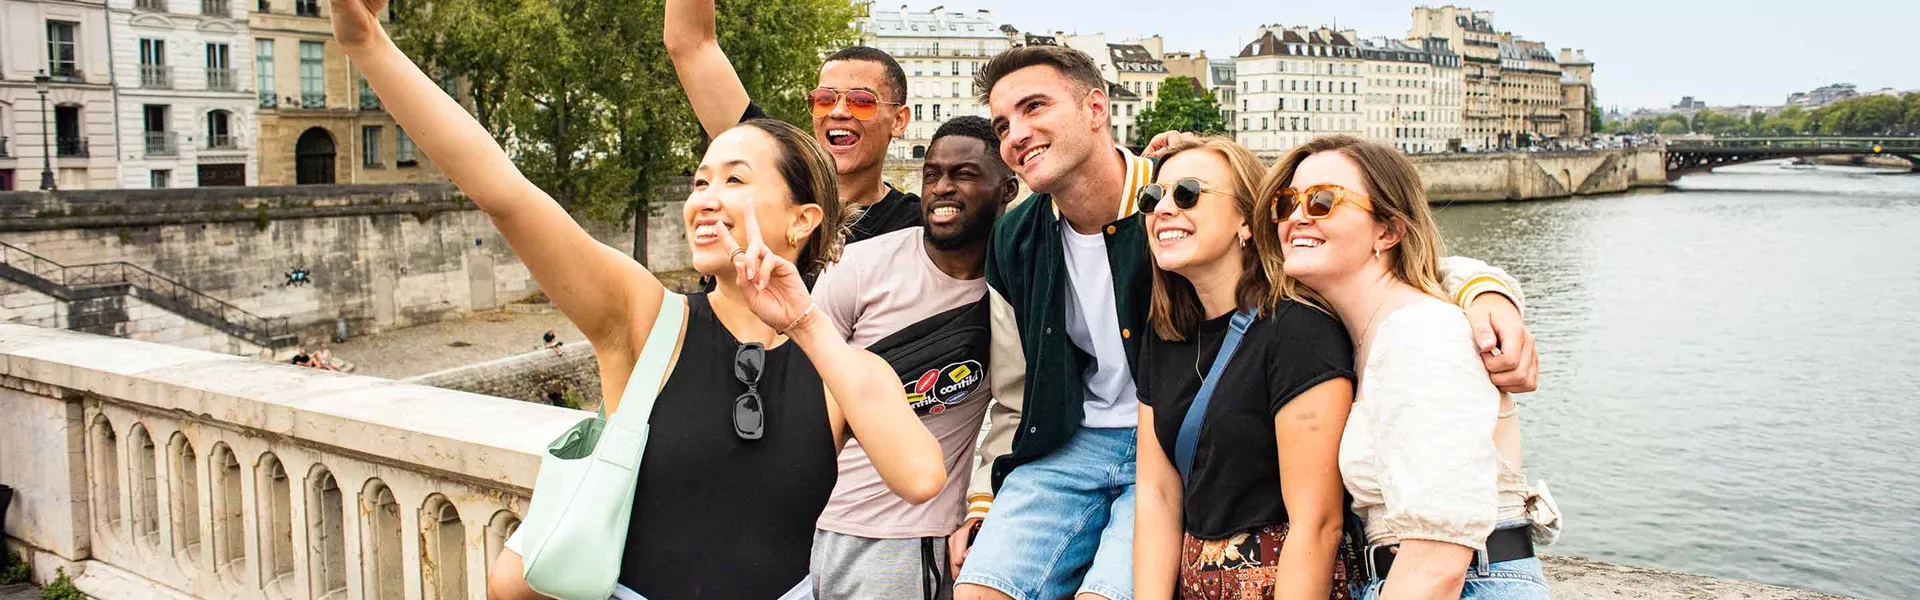 Group Taking Selfie On Bridge In Paris France